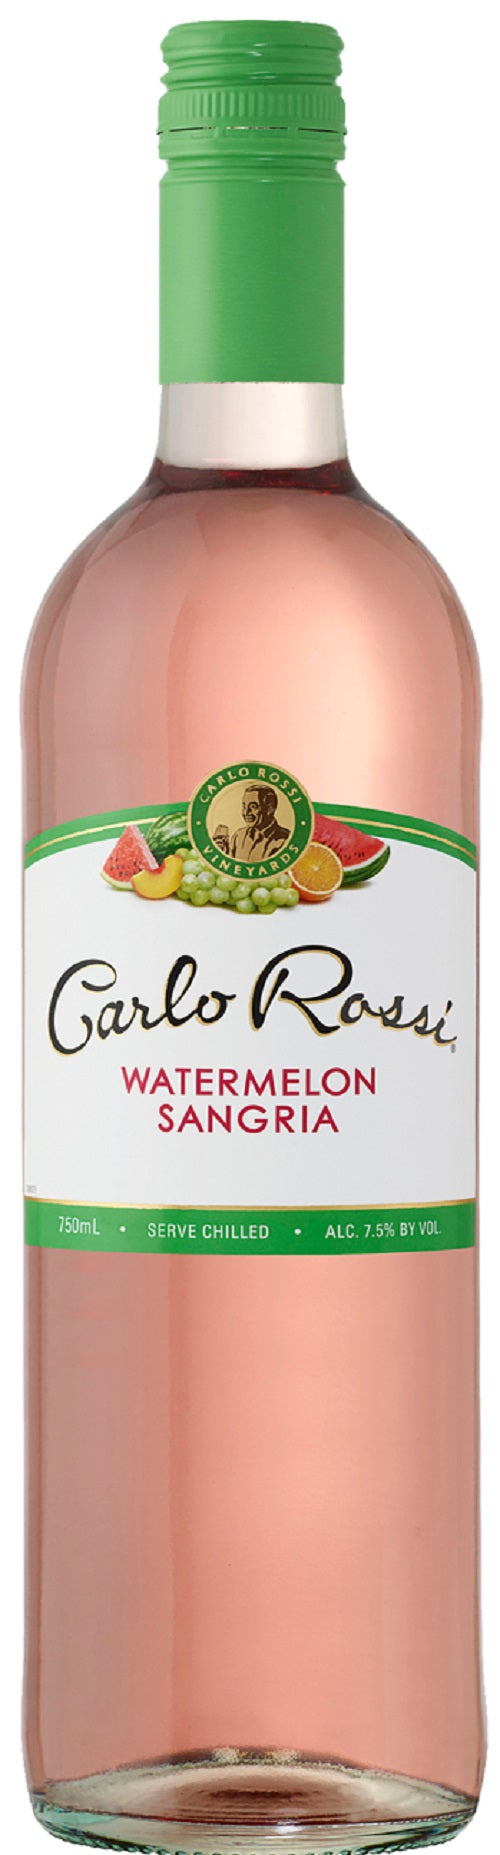 Carlo Rossi Sangria Watermelon